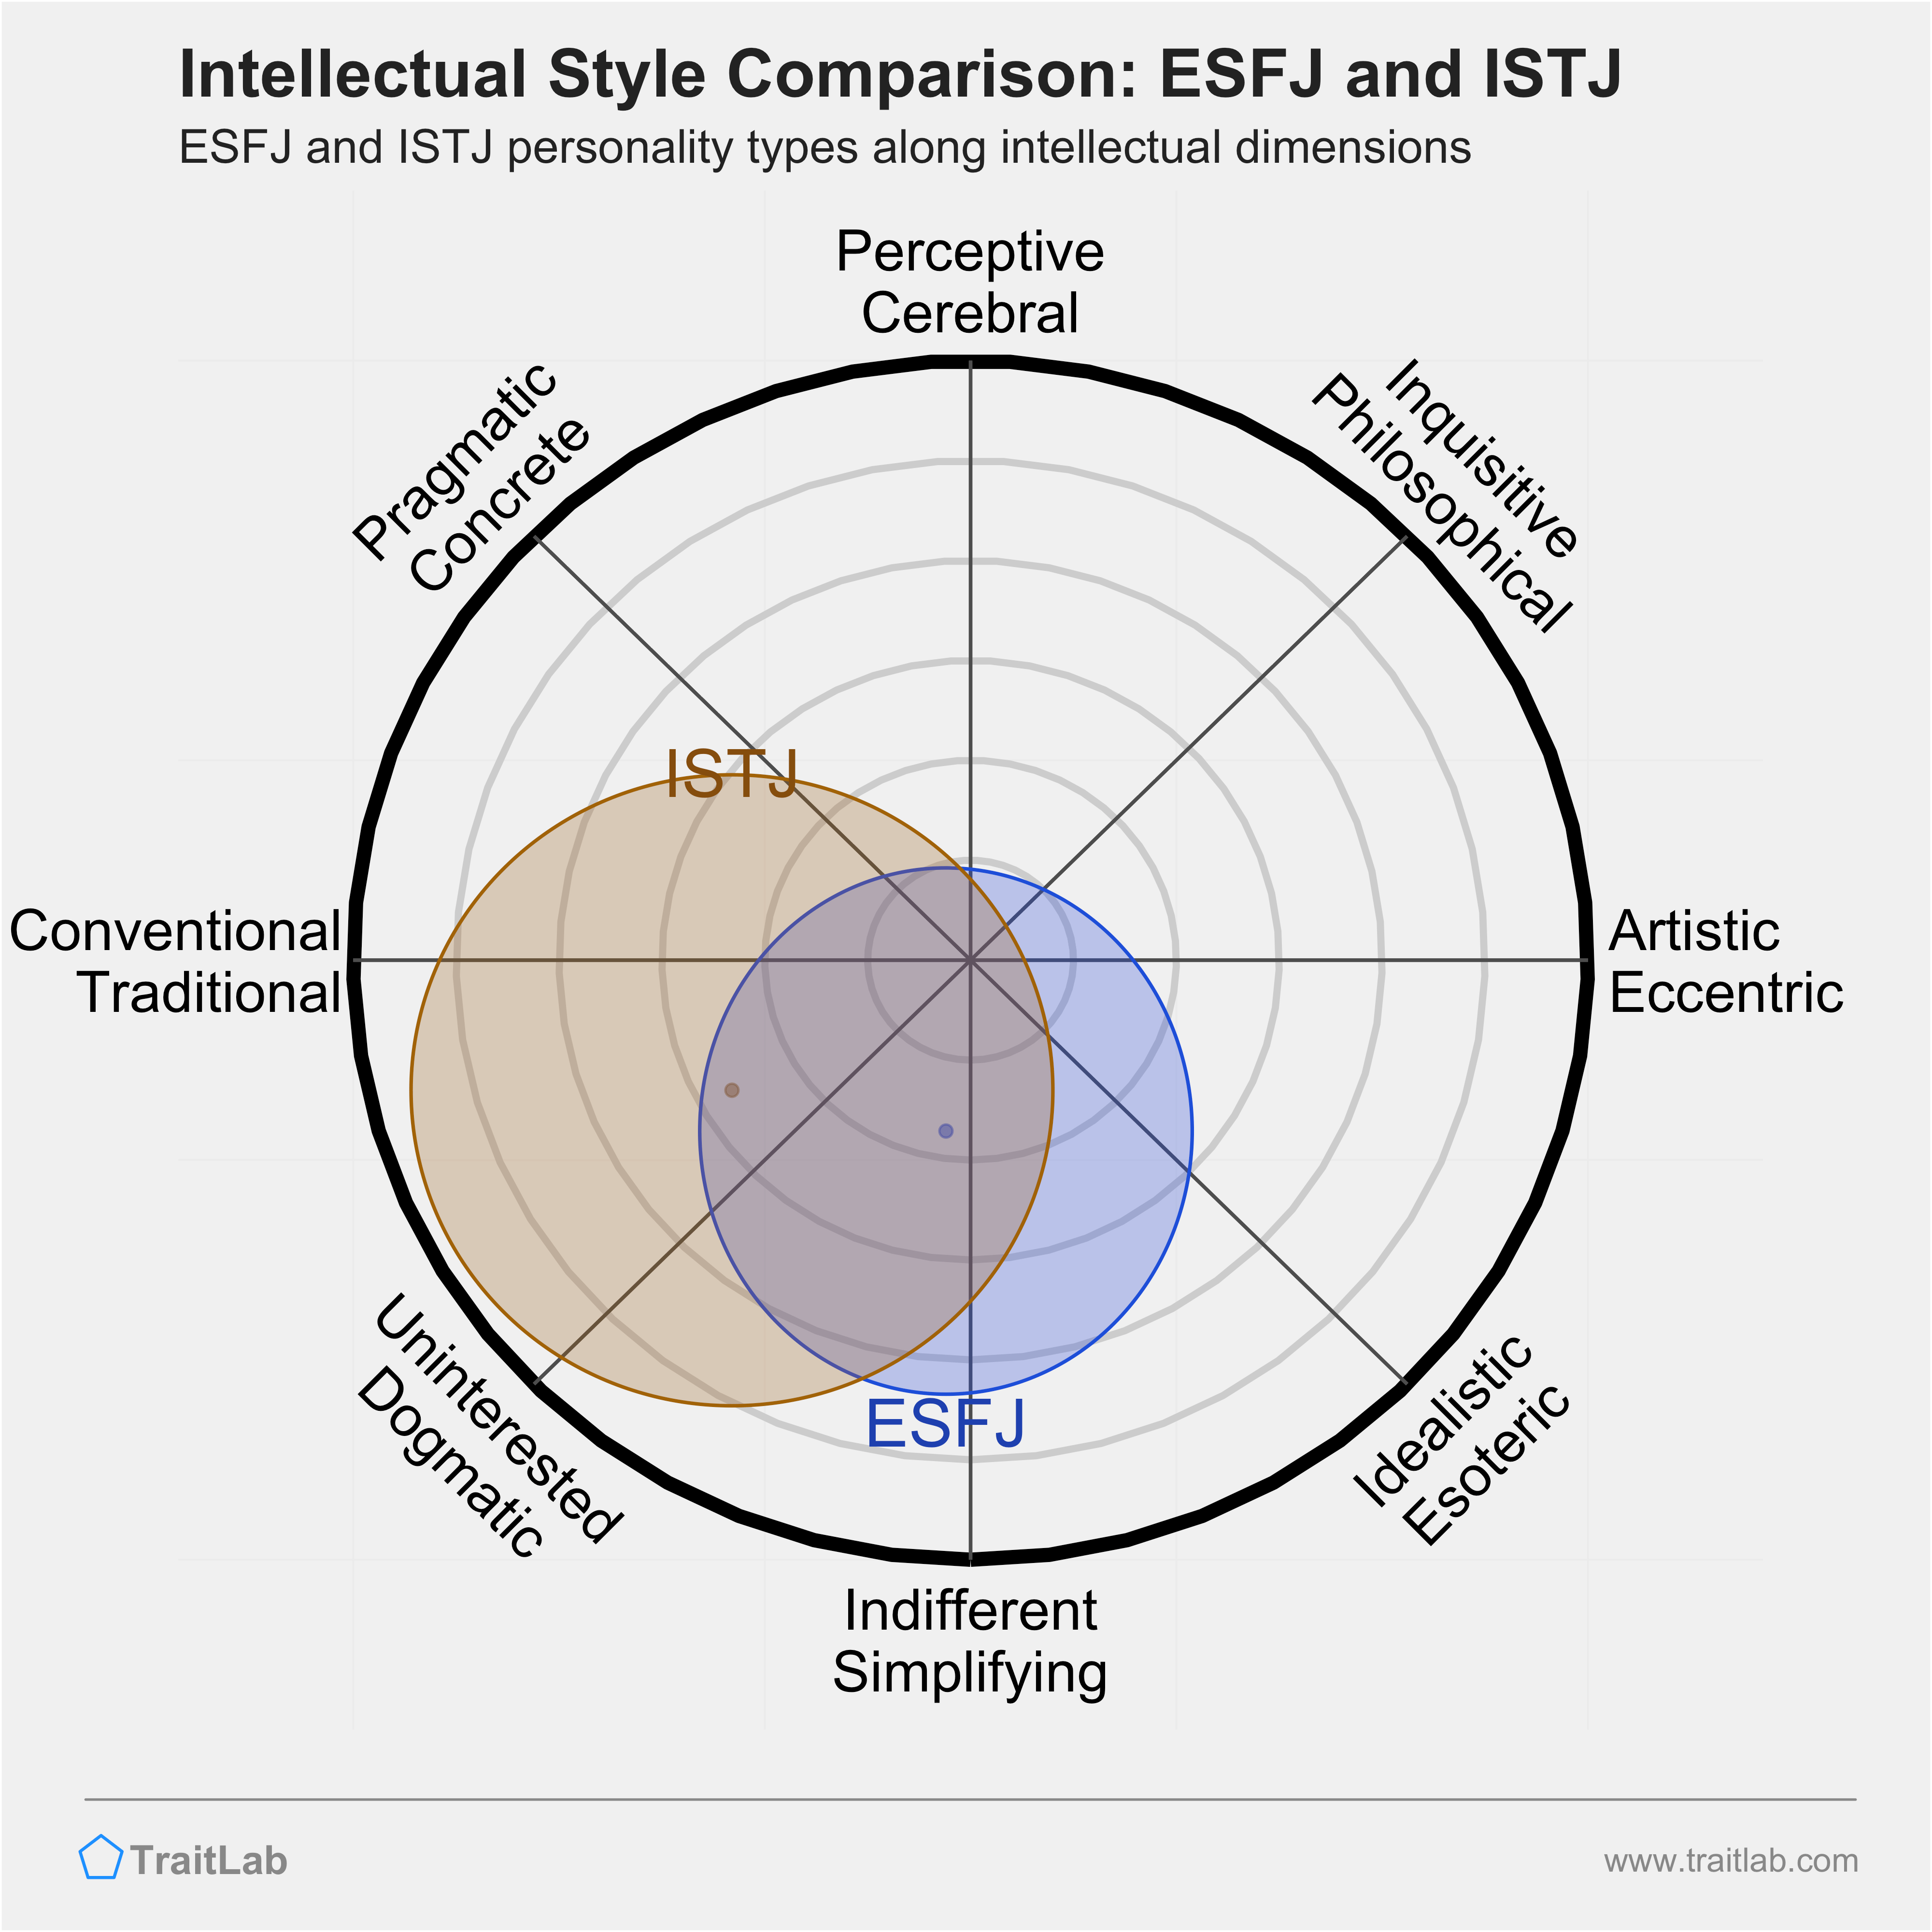 ESFJ and ISTJ comparison across intellectual dimensions